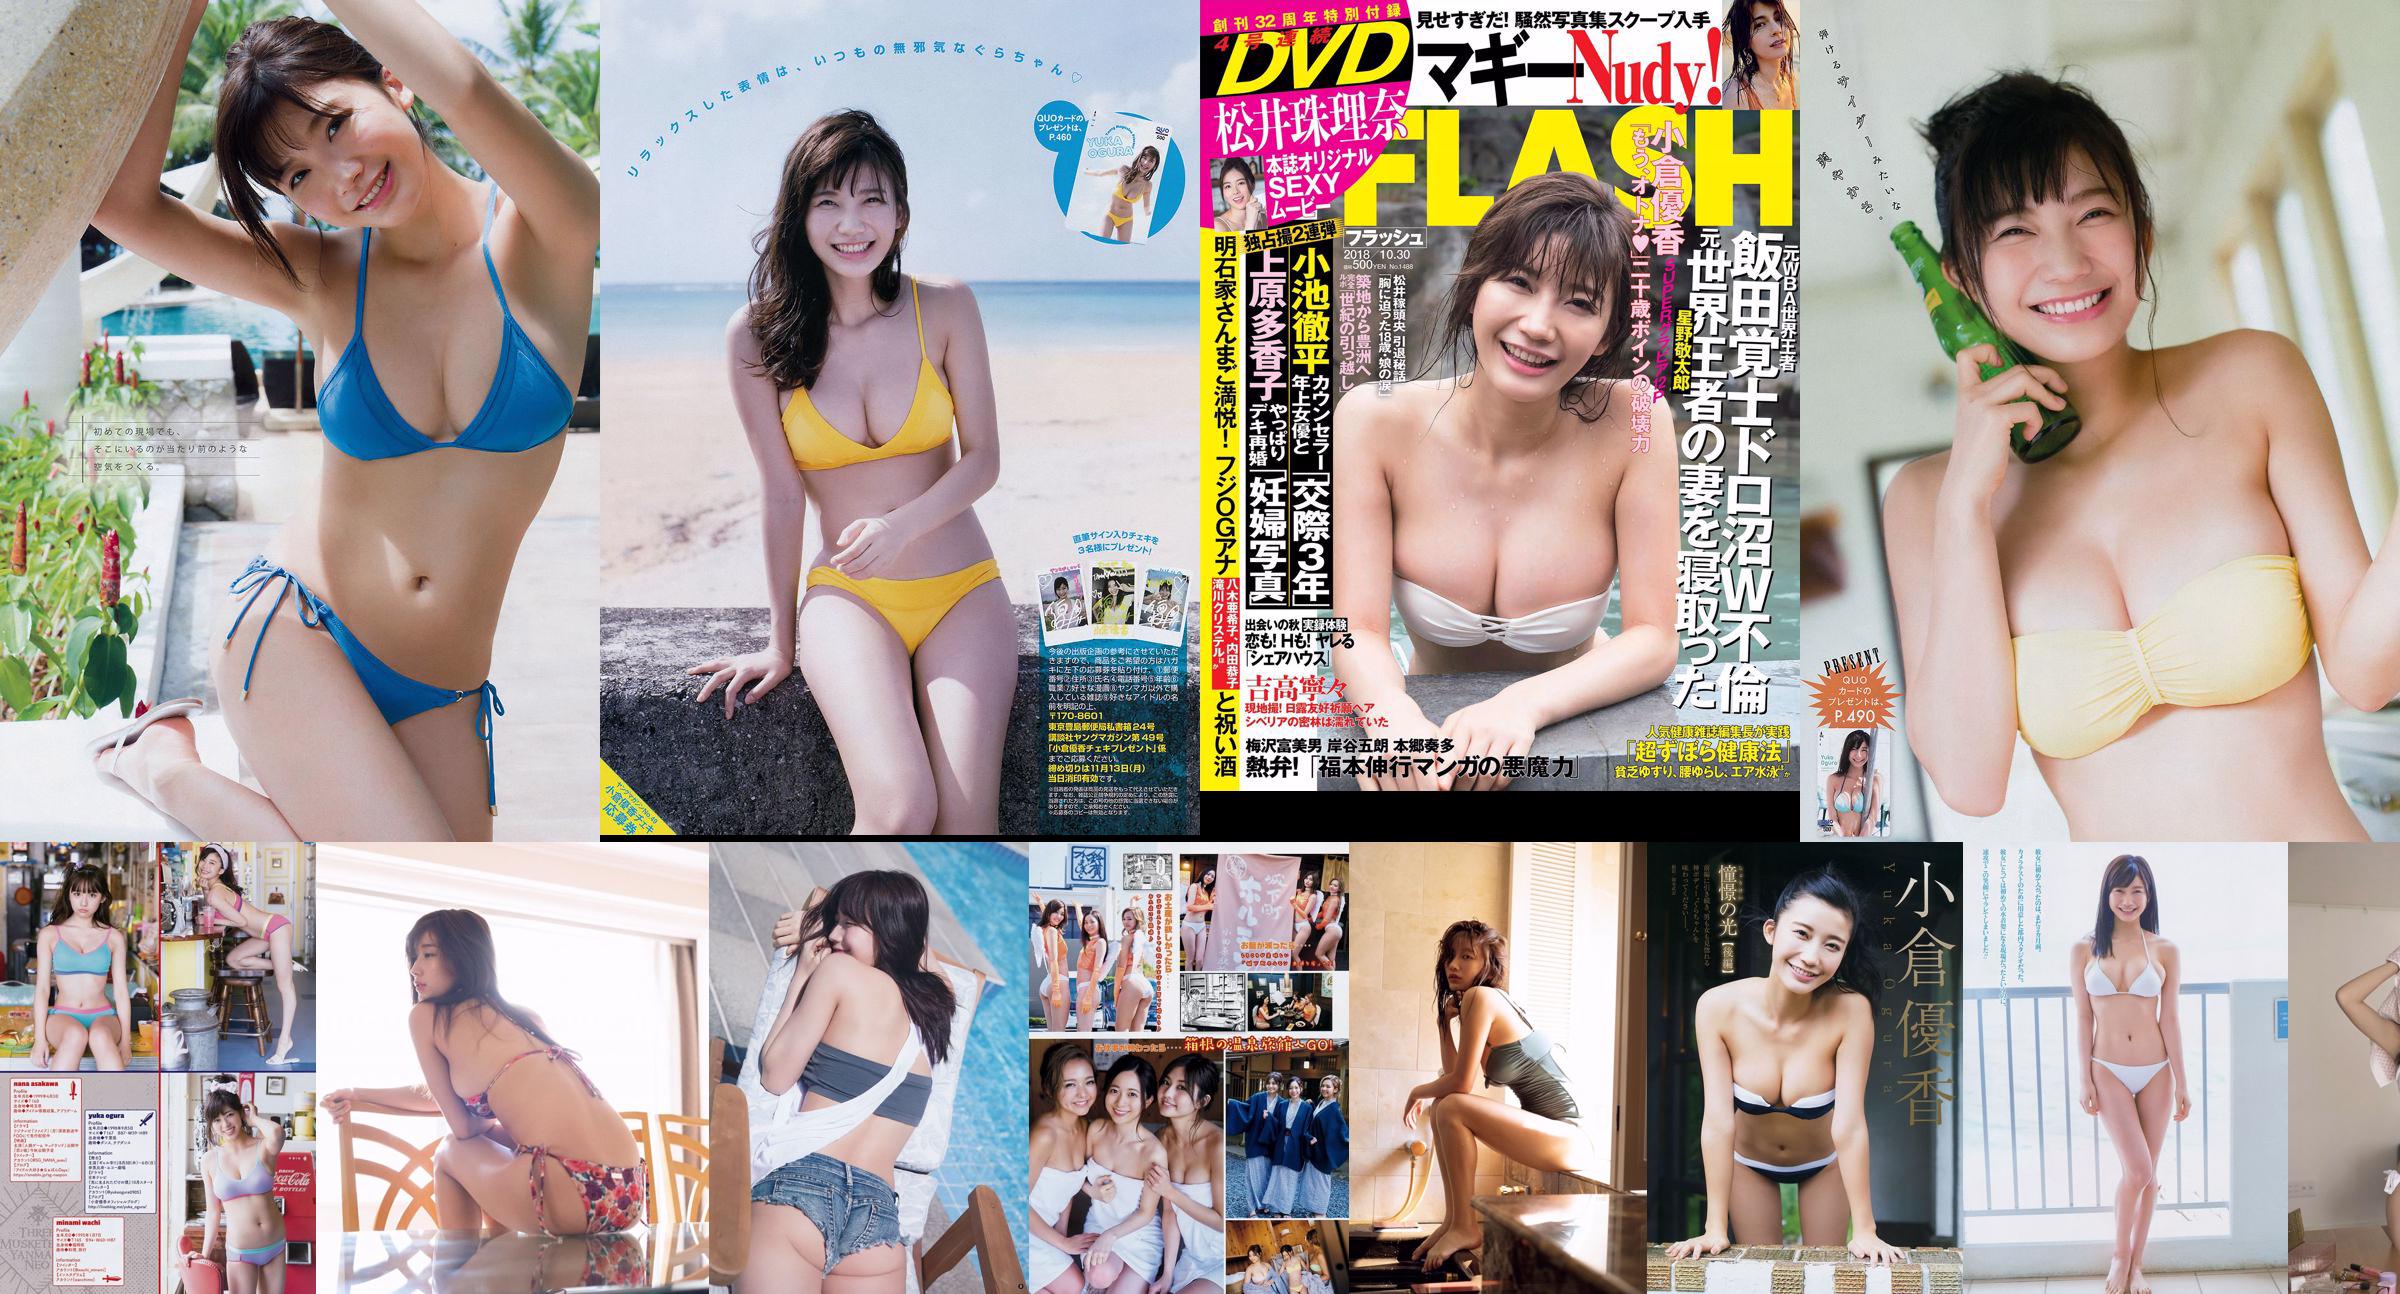 [Young Magazine] Ogura Yuka Suzmoto Miyu 2017 Magazine photo n ° 29 No.fd5123 Page 1